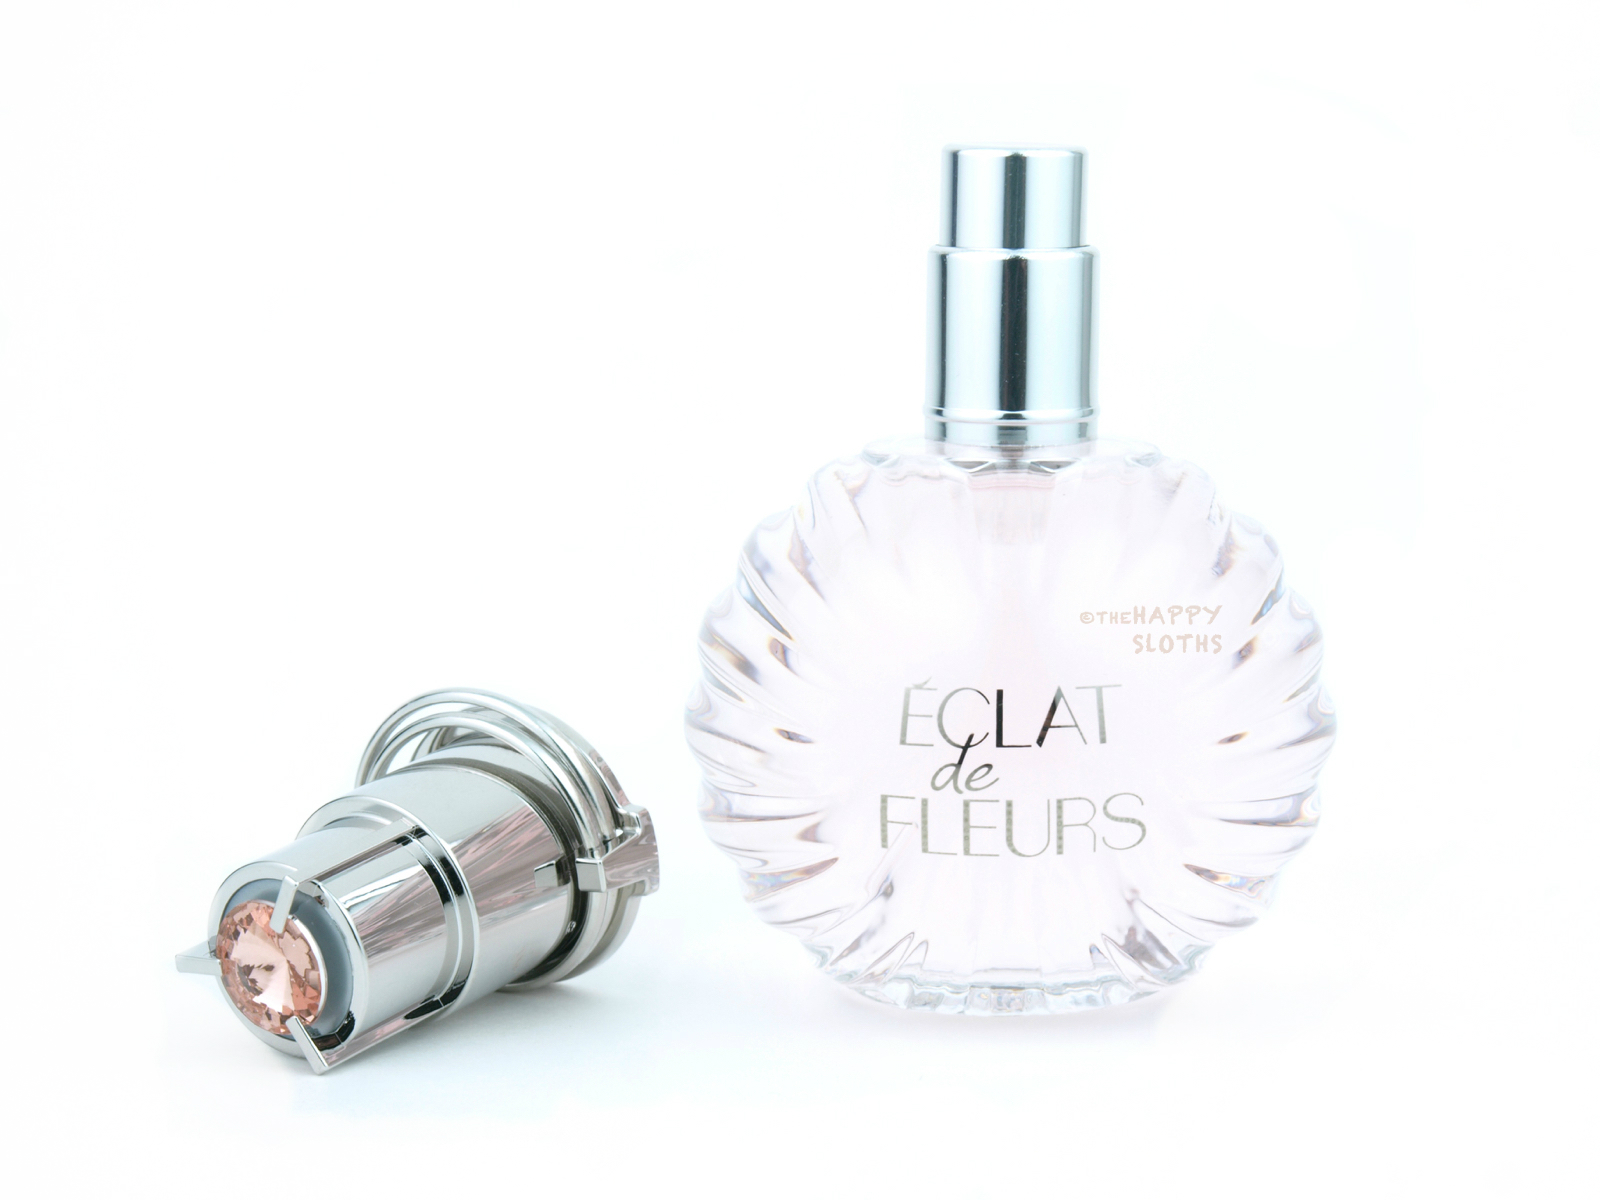 Lanvin Eclat de Fleurs Eau de Parfum: Review